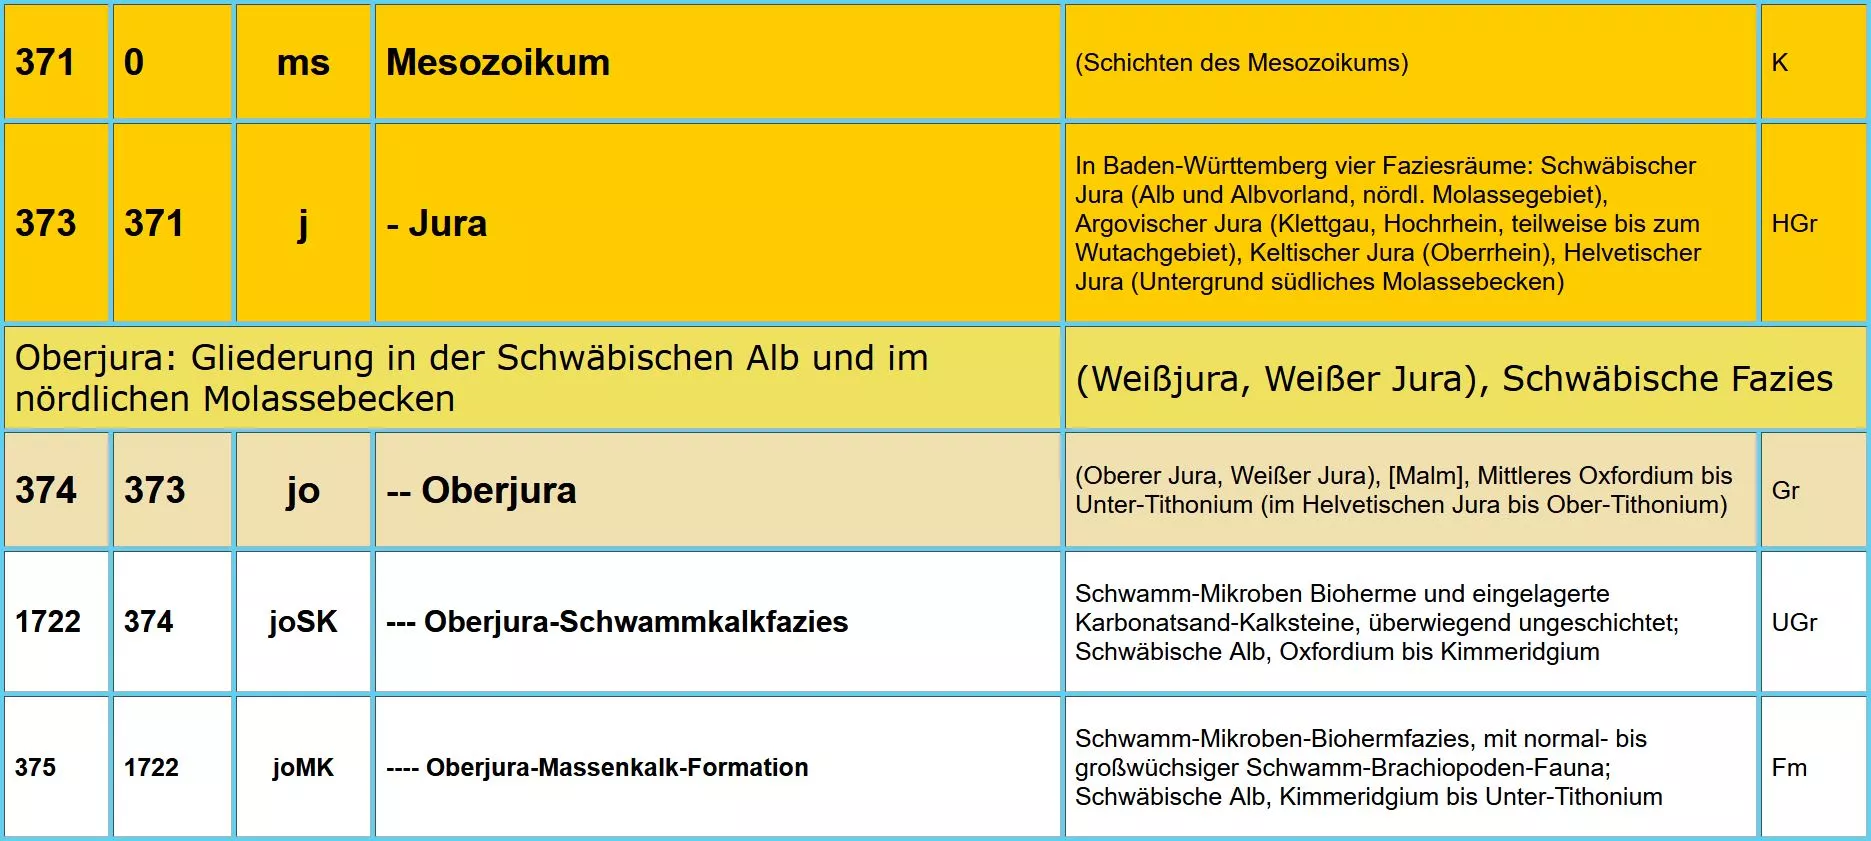 Ausschnitt aus dem Symbolschlüssel Geologie Baden-Württemberg des Mesozoikum mit ID, Oberbegriff, Kürzel, geologische Einheit, Bemerkung und Strat. Rang 